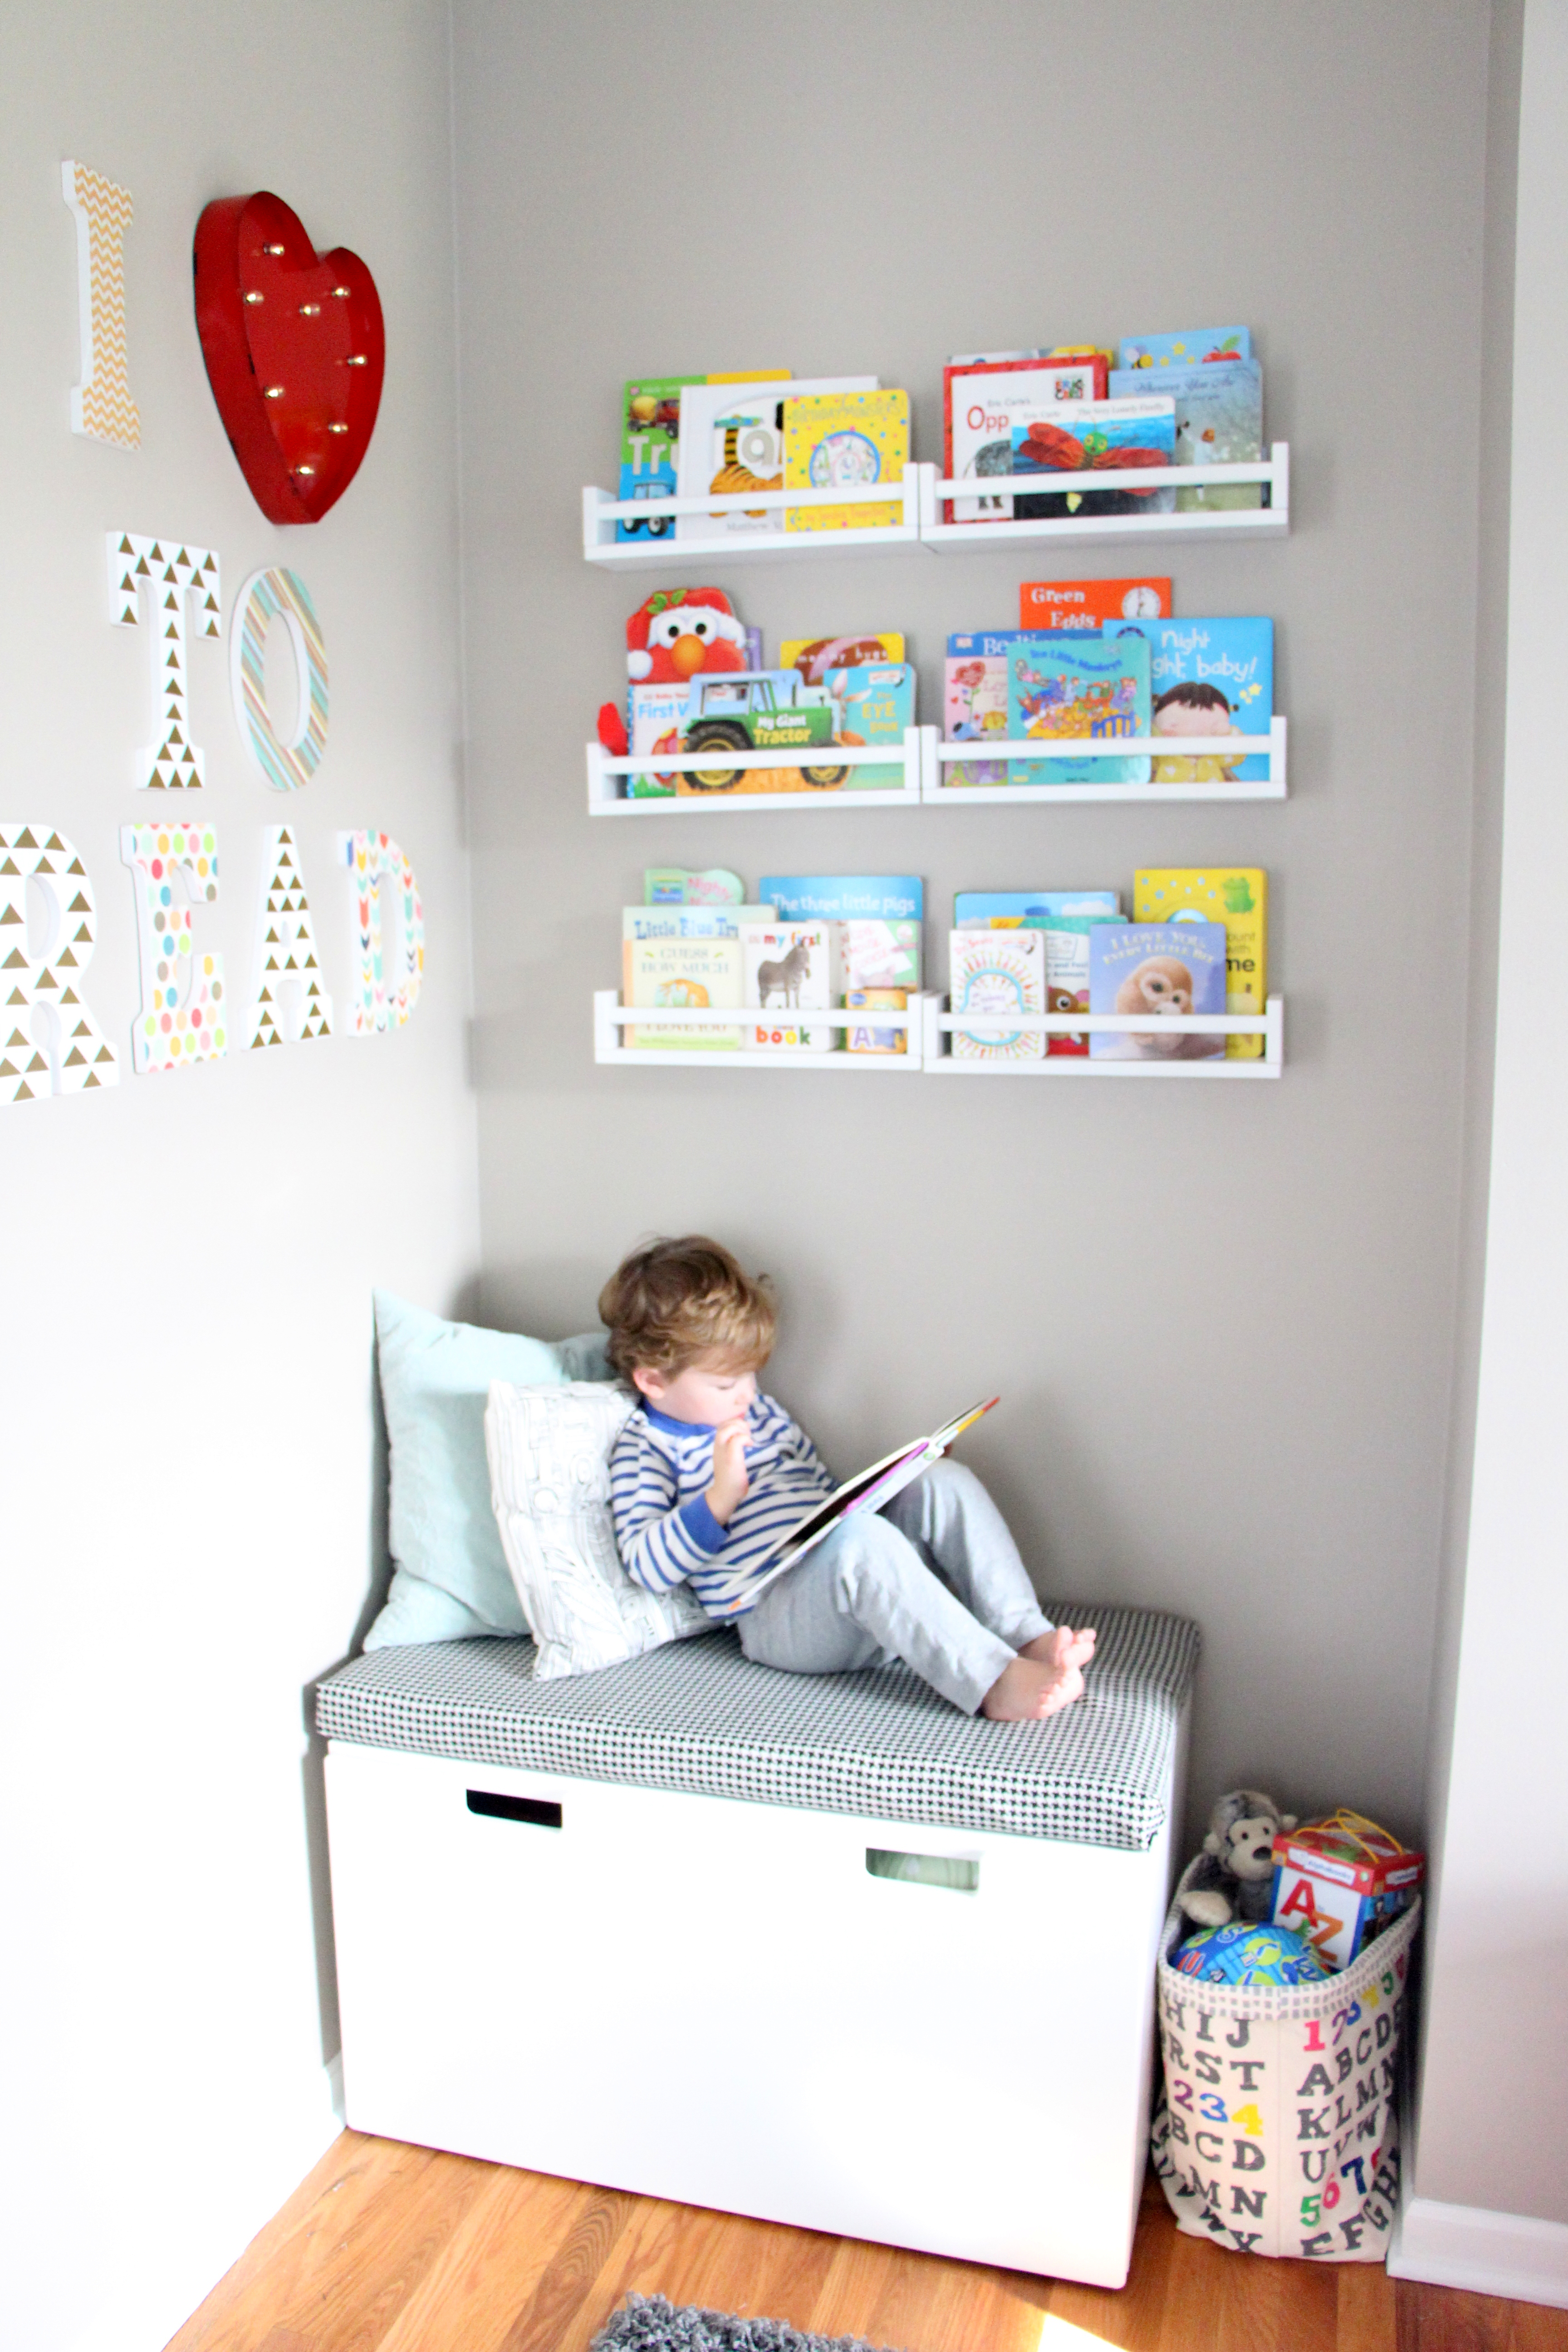 DIY Playroom Reading Nook + no sew Bench seat cushion + DIY shelves